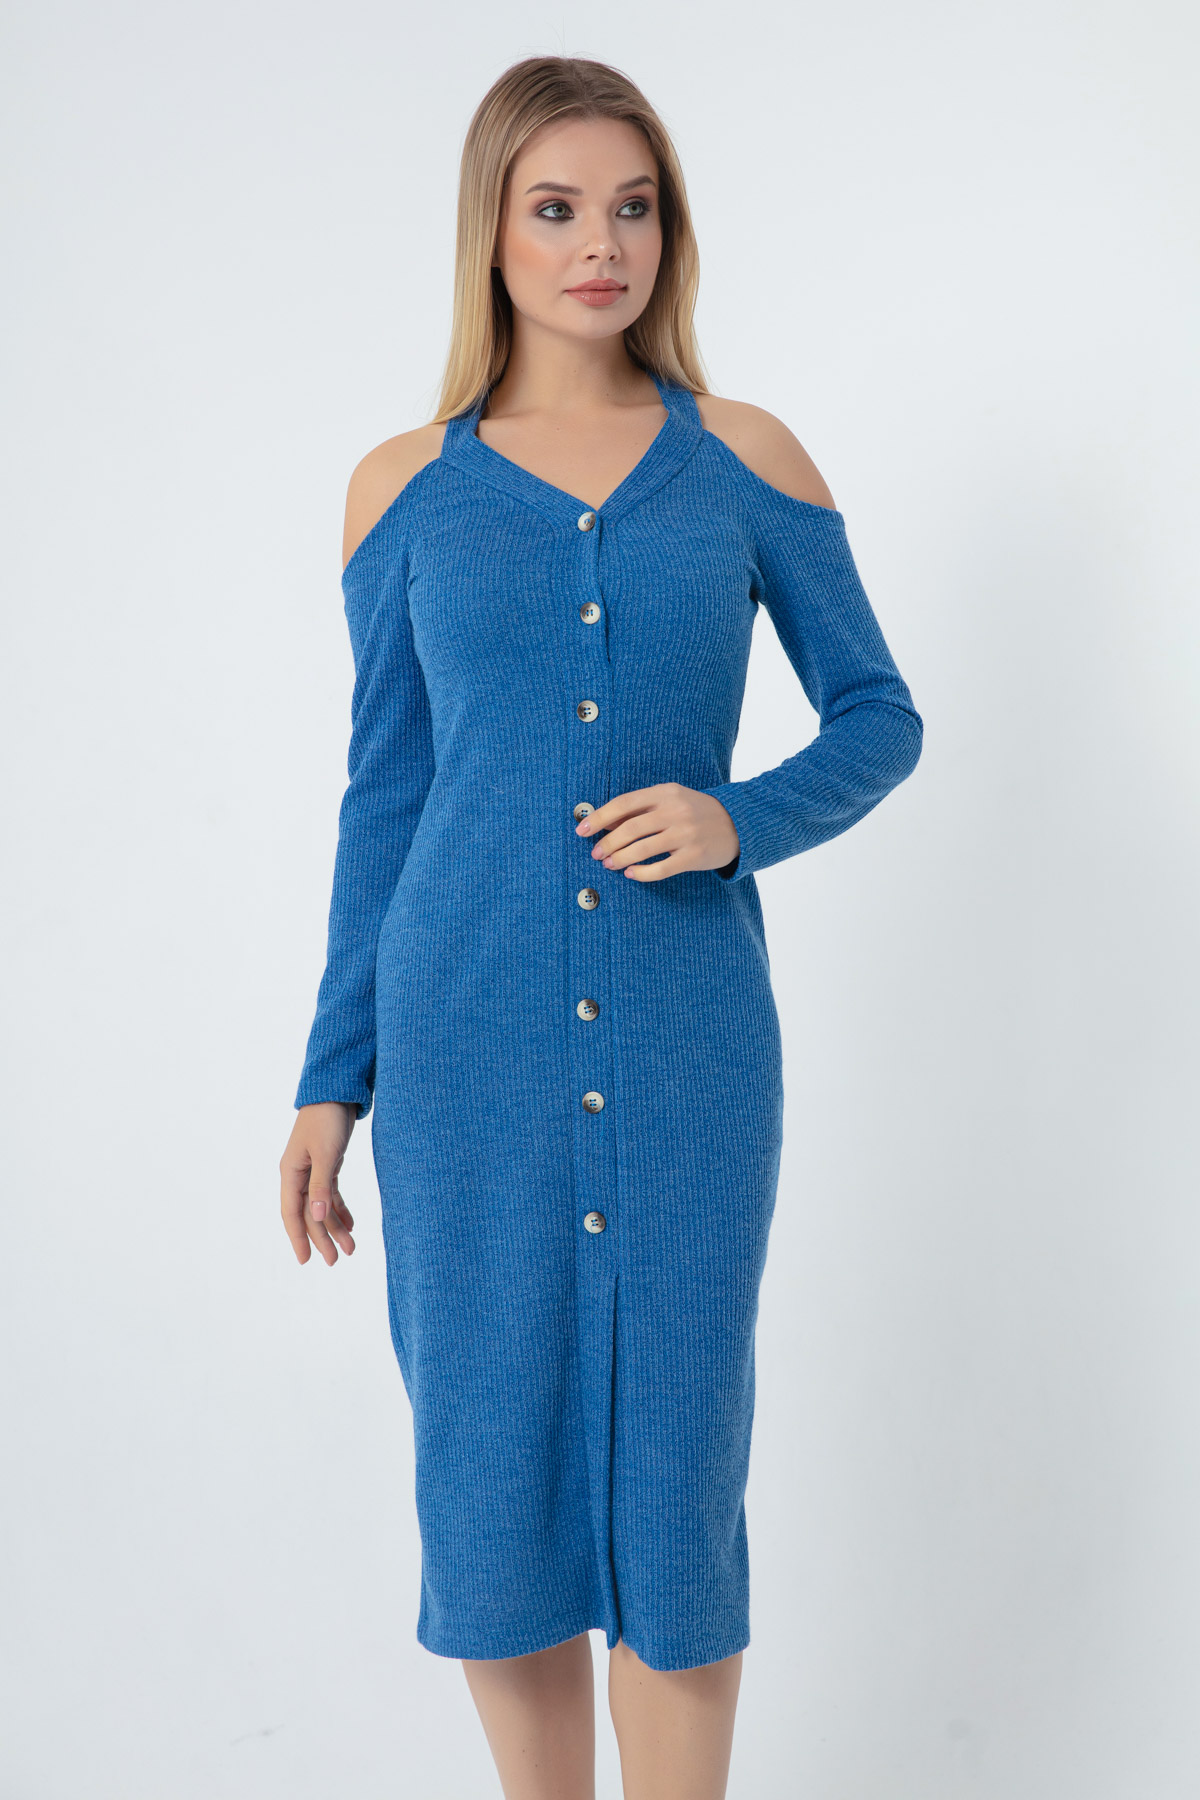 Women's Blue Knitted Dress